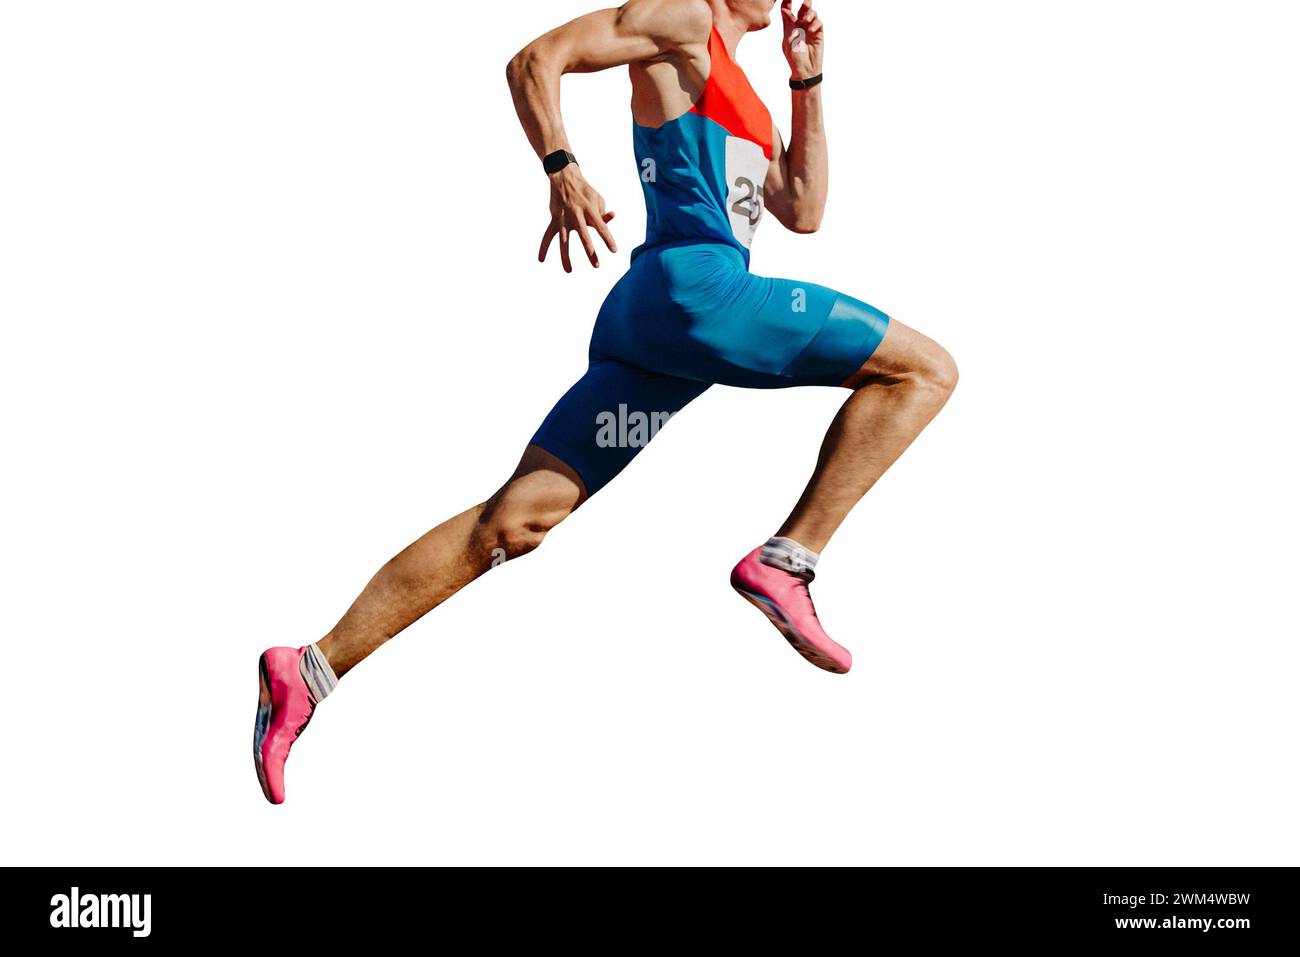 Männliche Athleten sprinten im Stadion, Muskeln gespannt, isoliert auf weißem Hintergrund Stockfoto